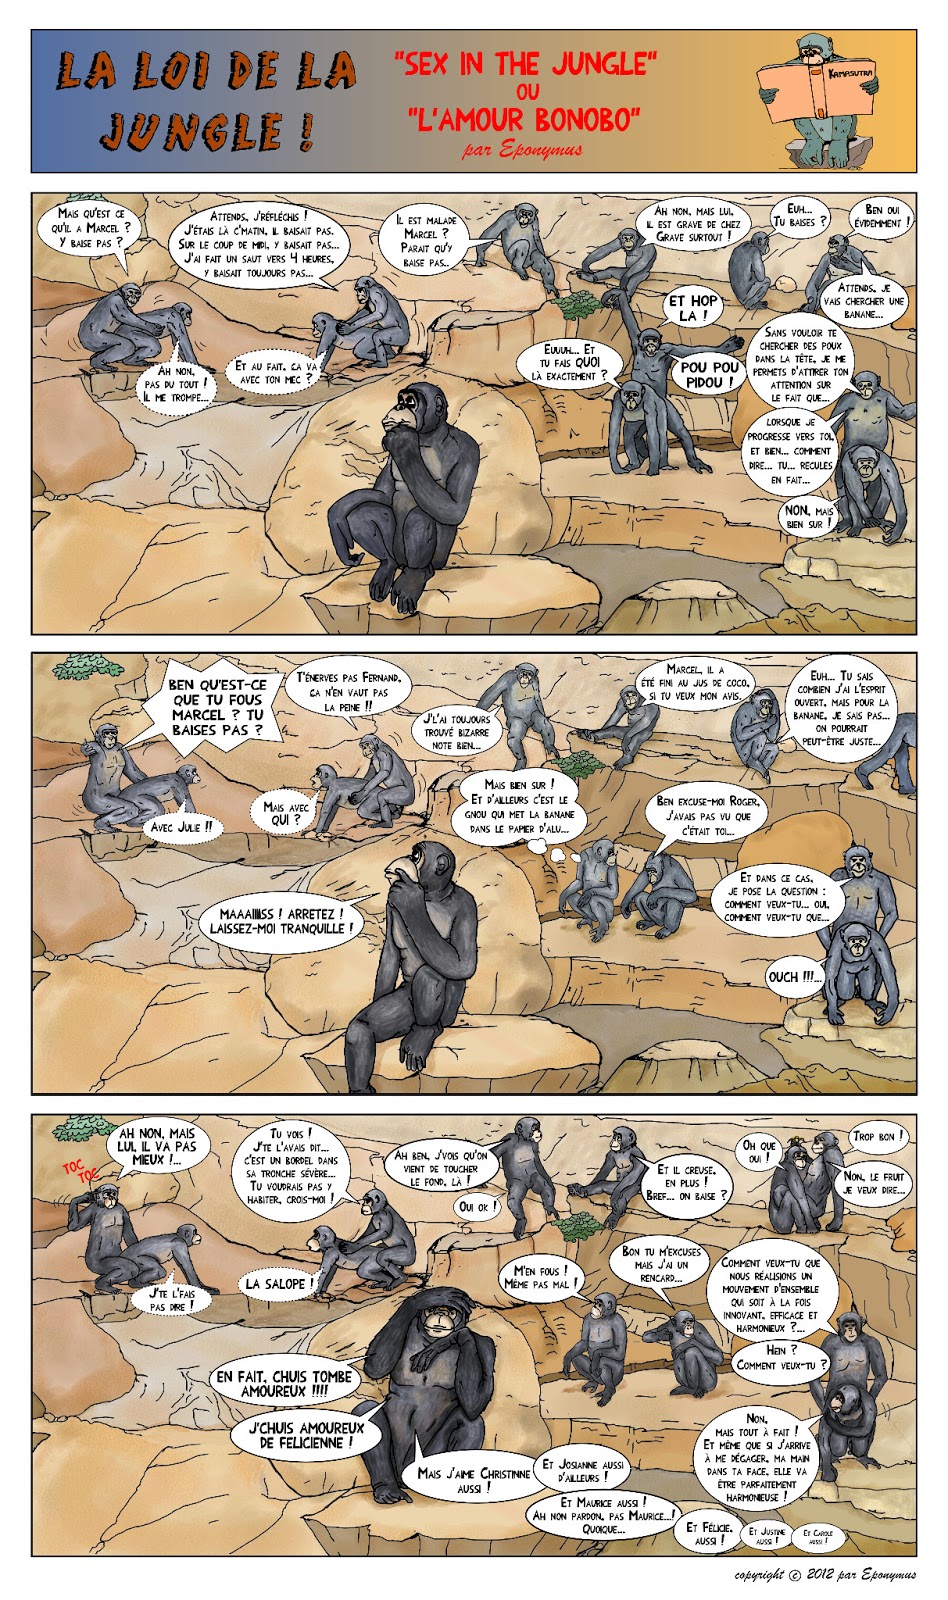 La loi de la jungle page 9